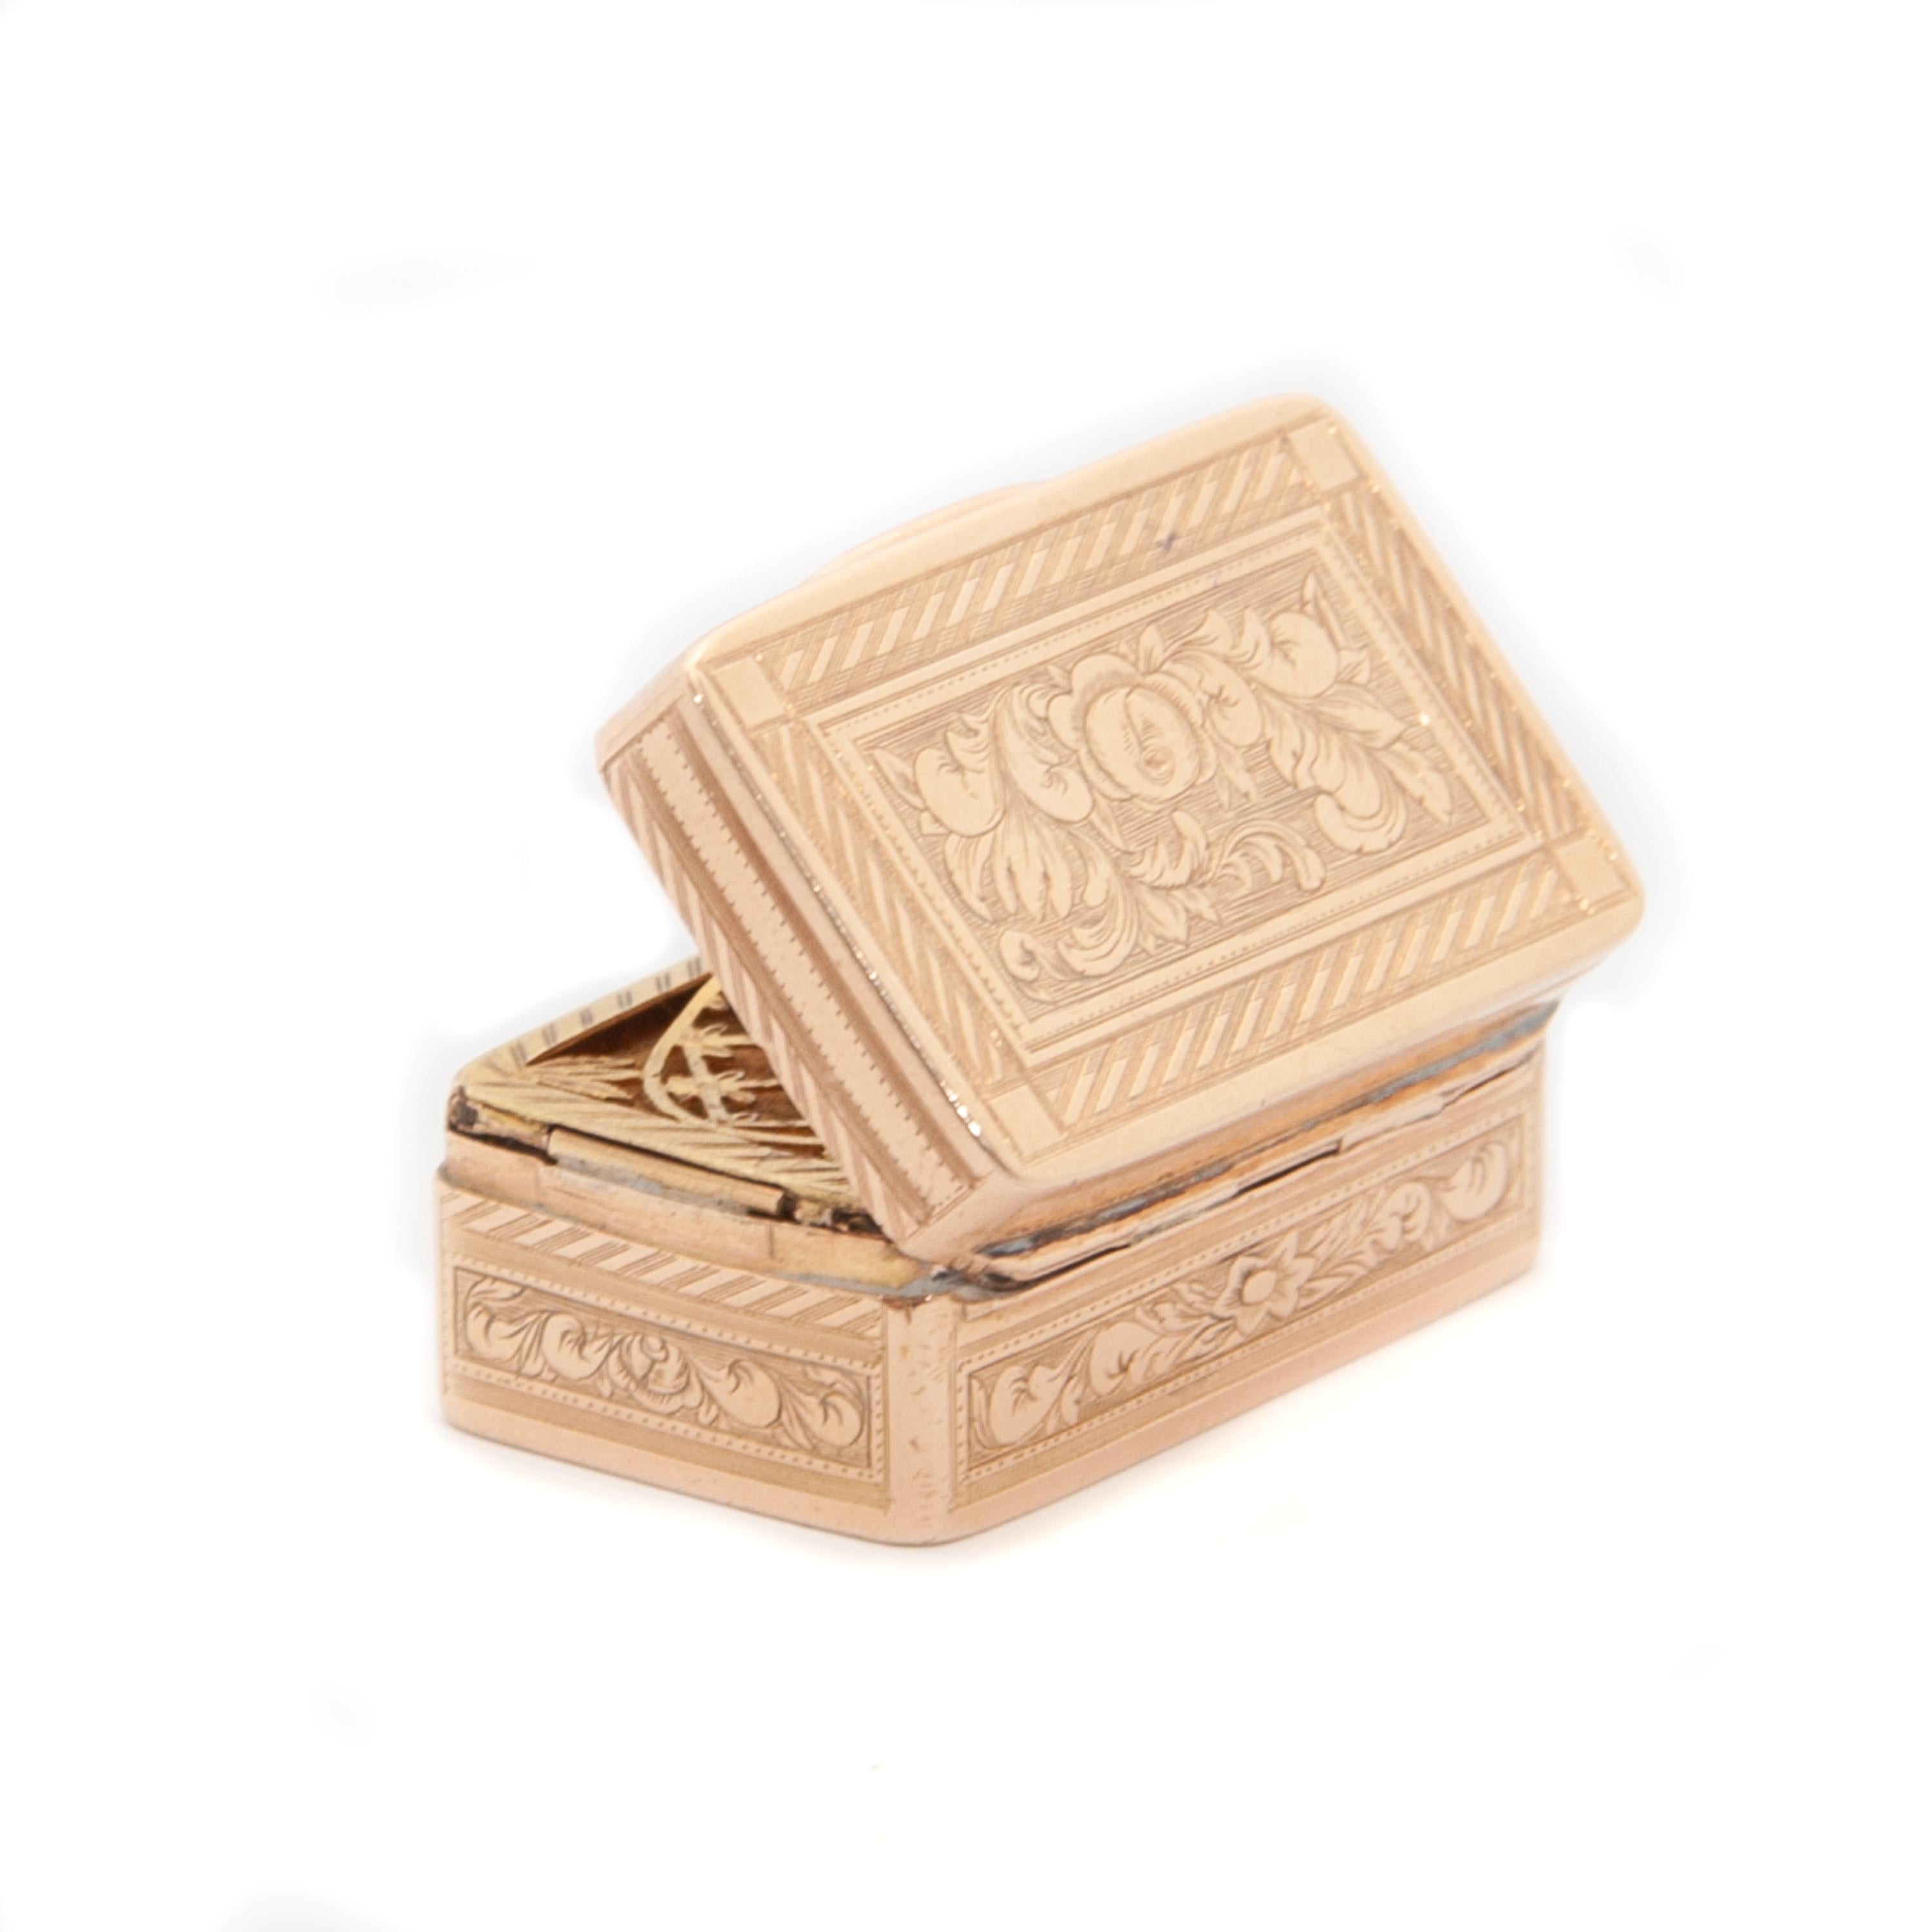 Antique Victorian Gold Vinaigrette Scent Box Pendant For Sale 2